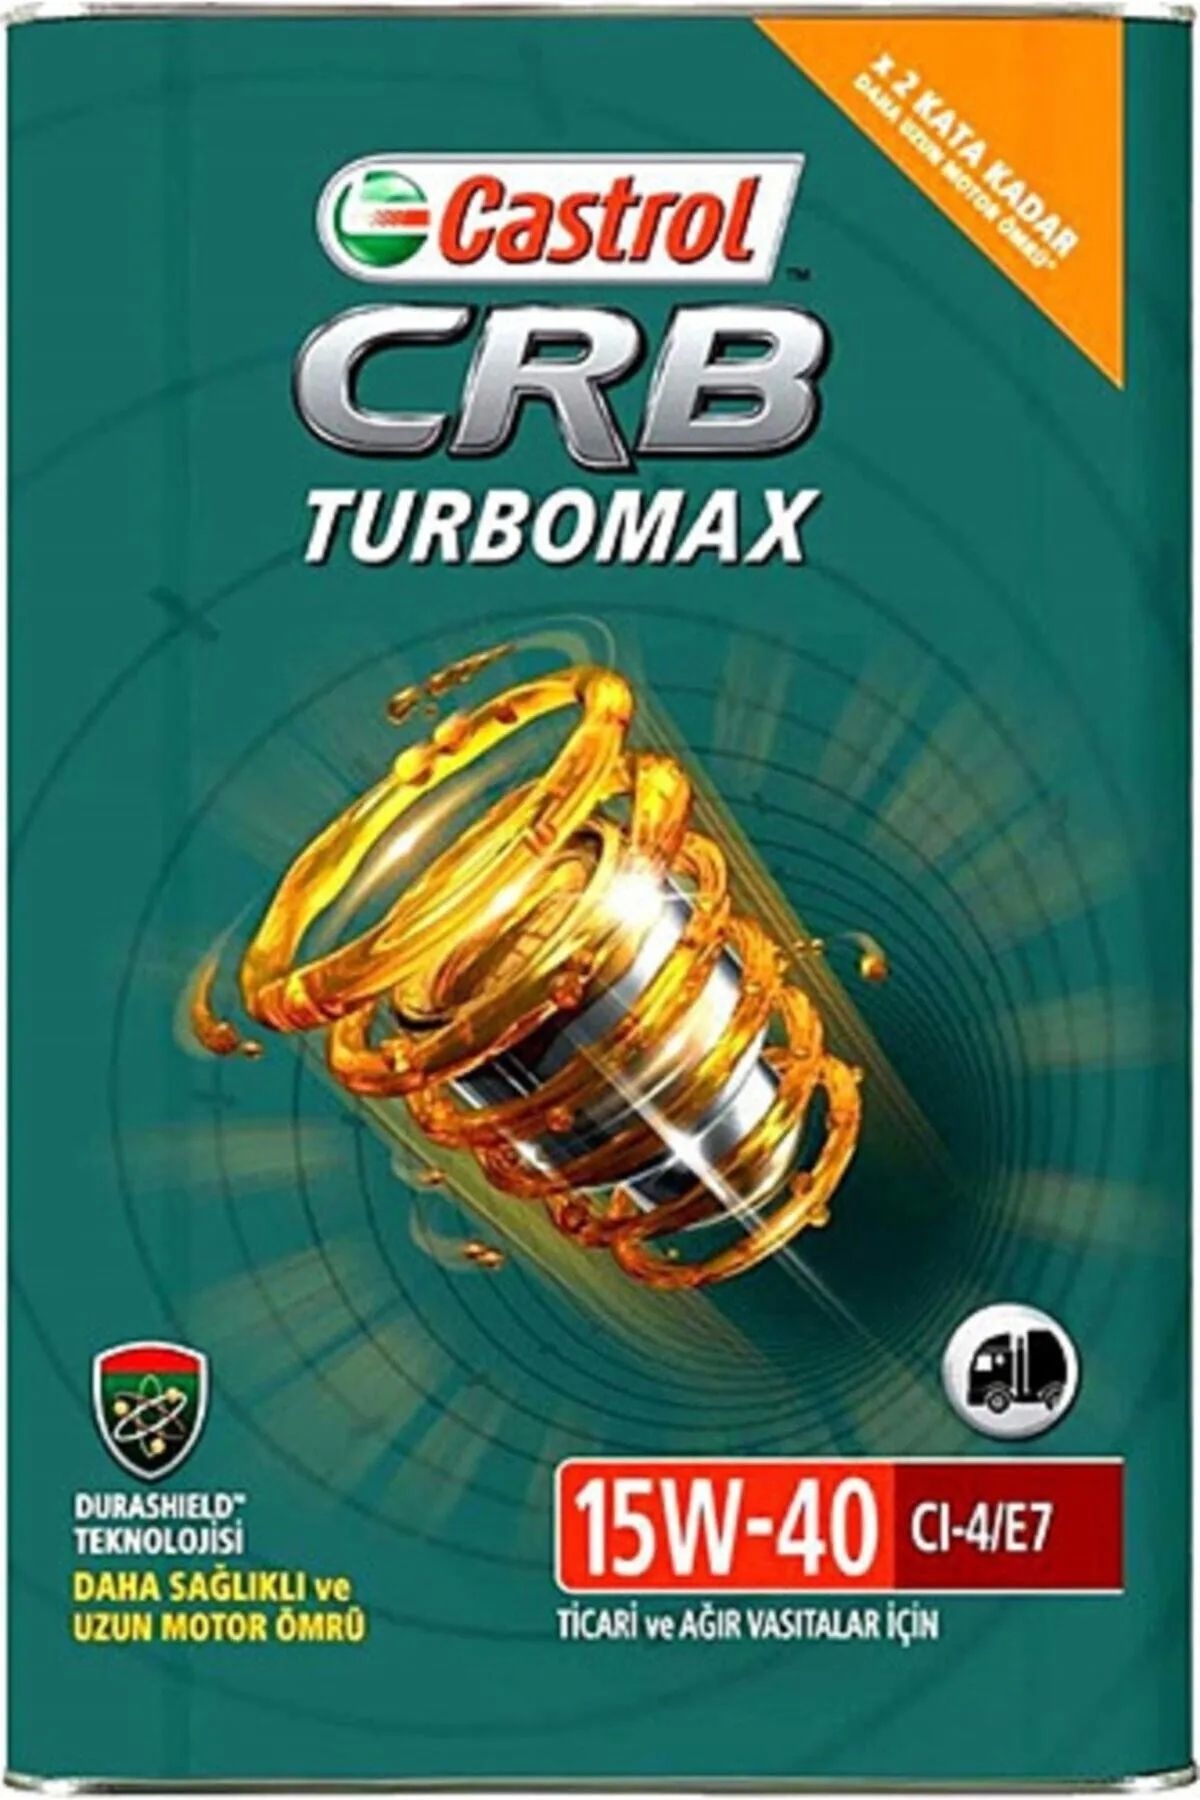 Castrol Crb Turbomax 15w40 16 Kg Cı-e4/e7